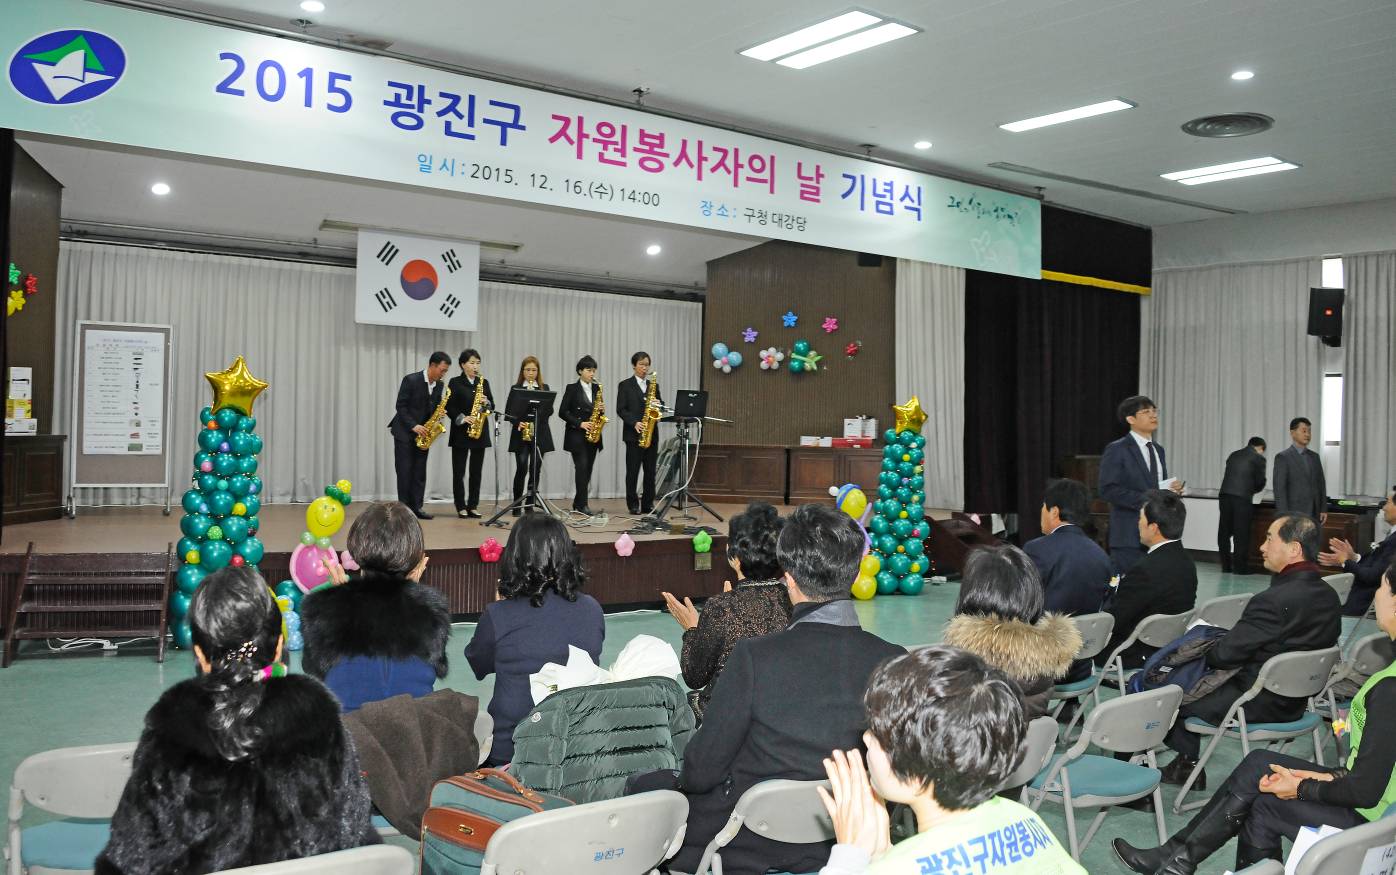 20151216-2015 자원봉사자의 날 기념 행사 개최 1차